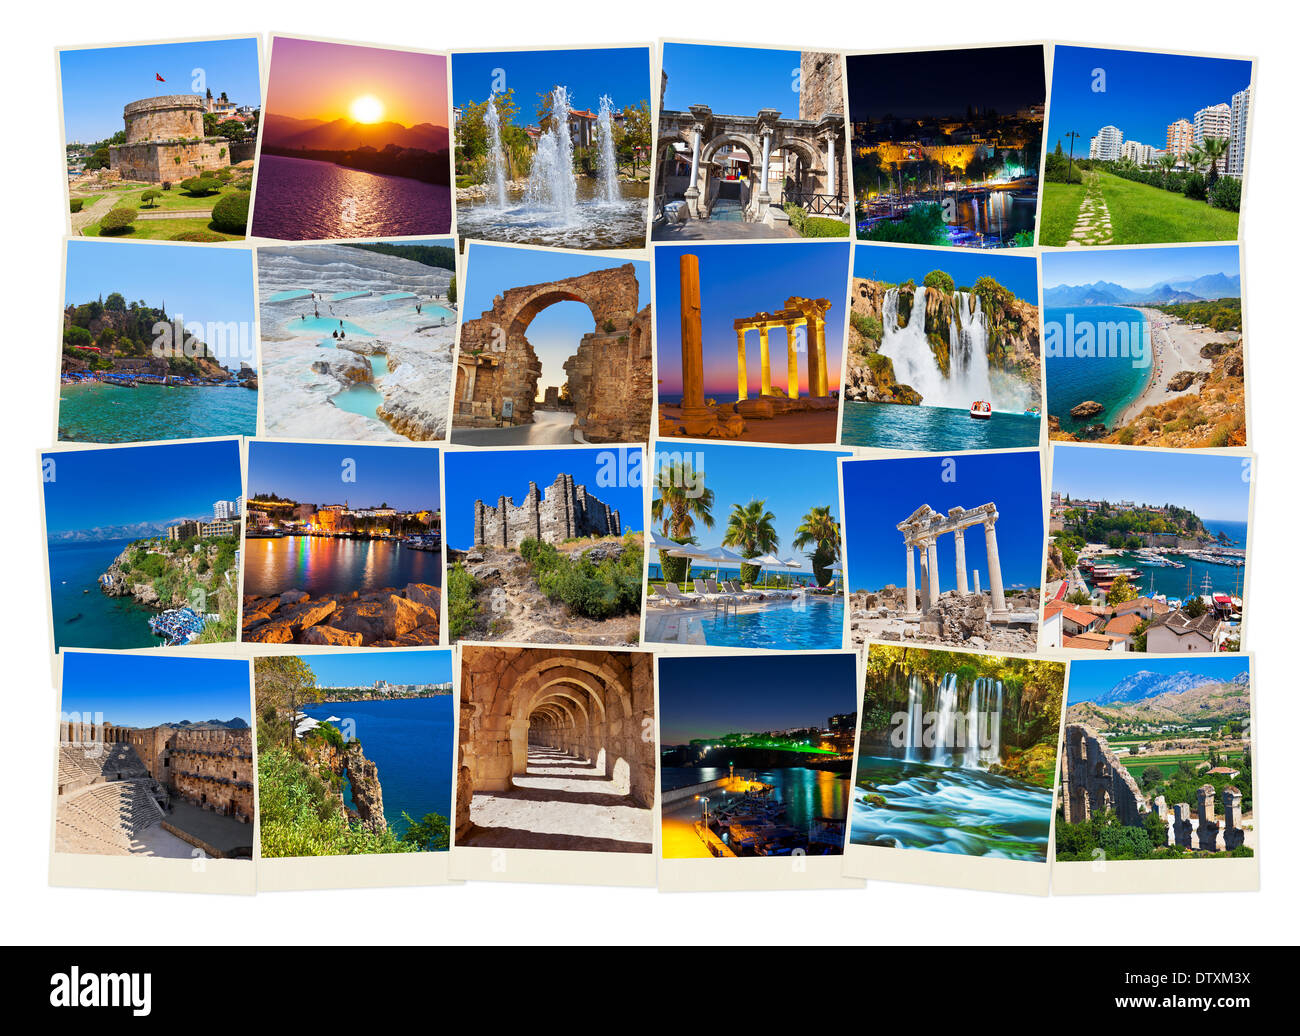 Pila di Antalya in Turchia le immagini del viaggio Foto Stock